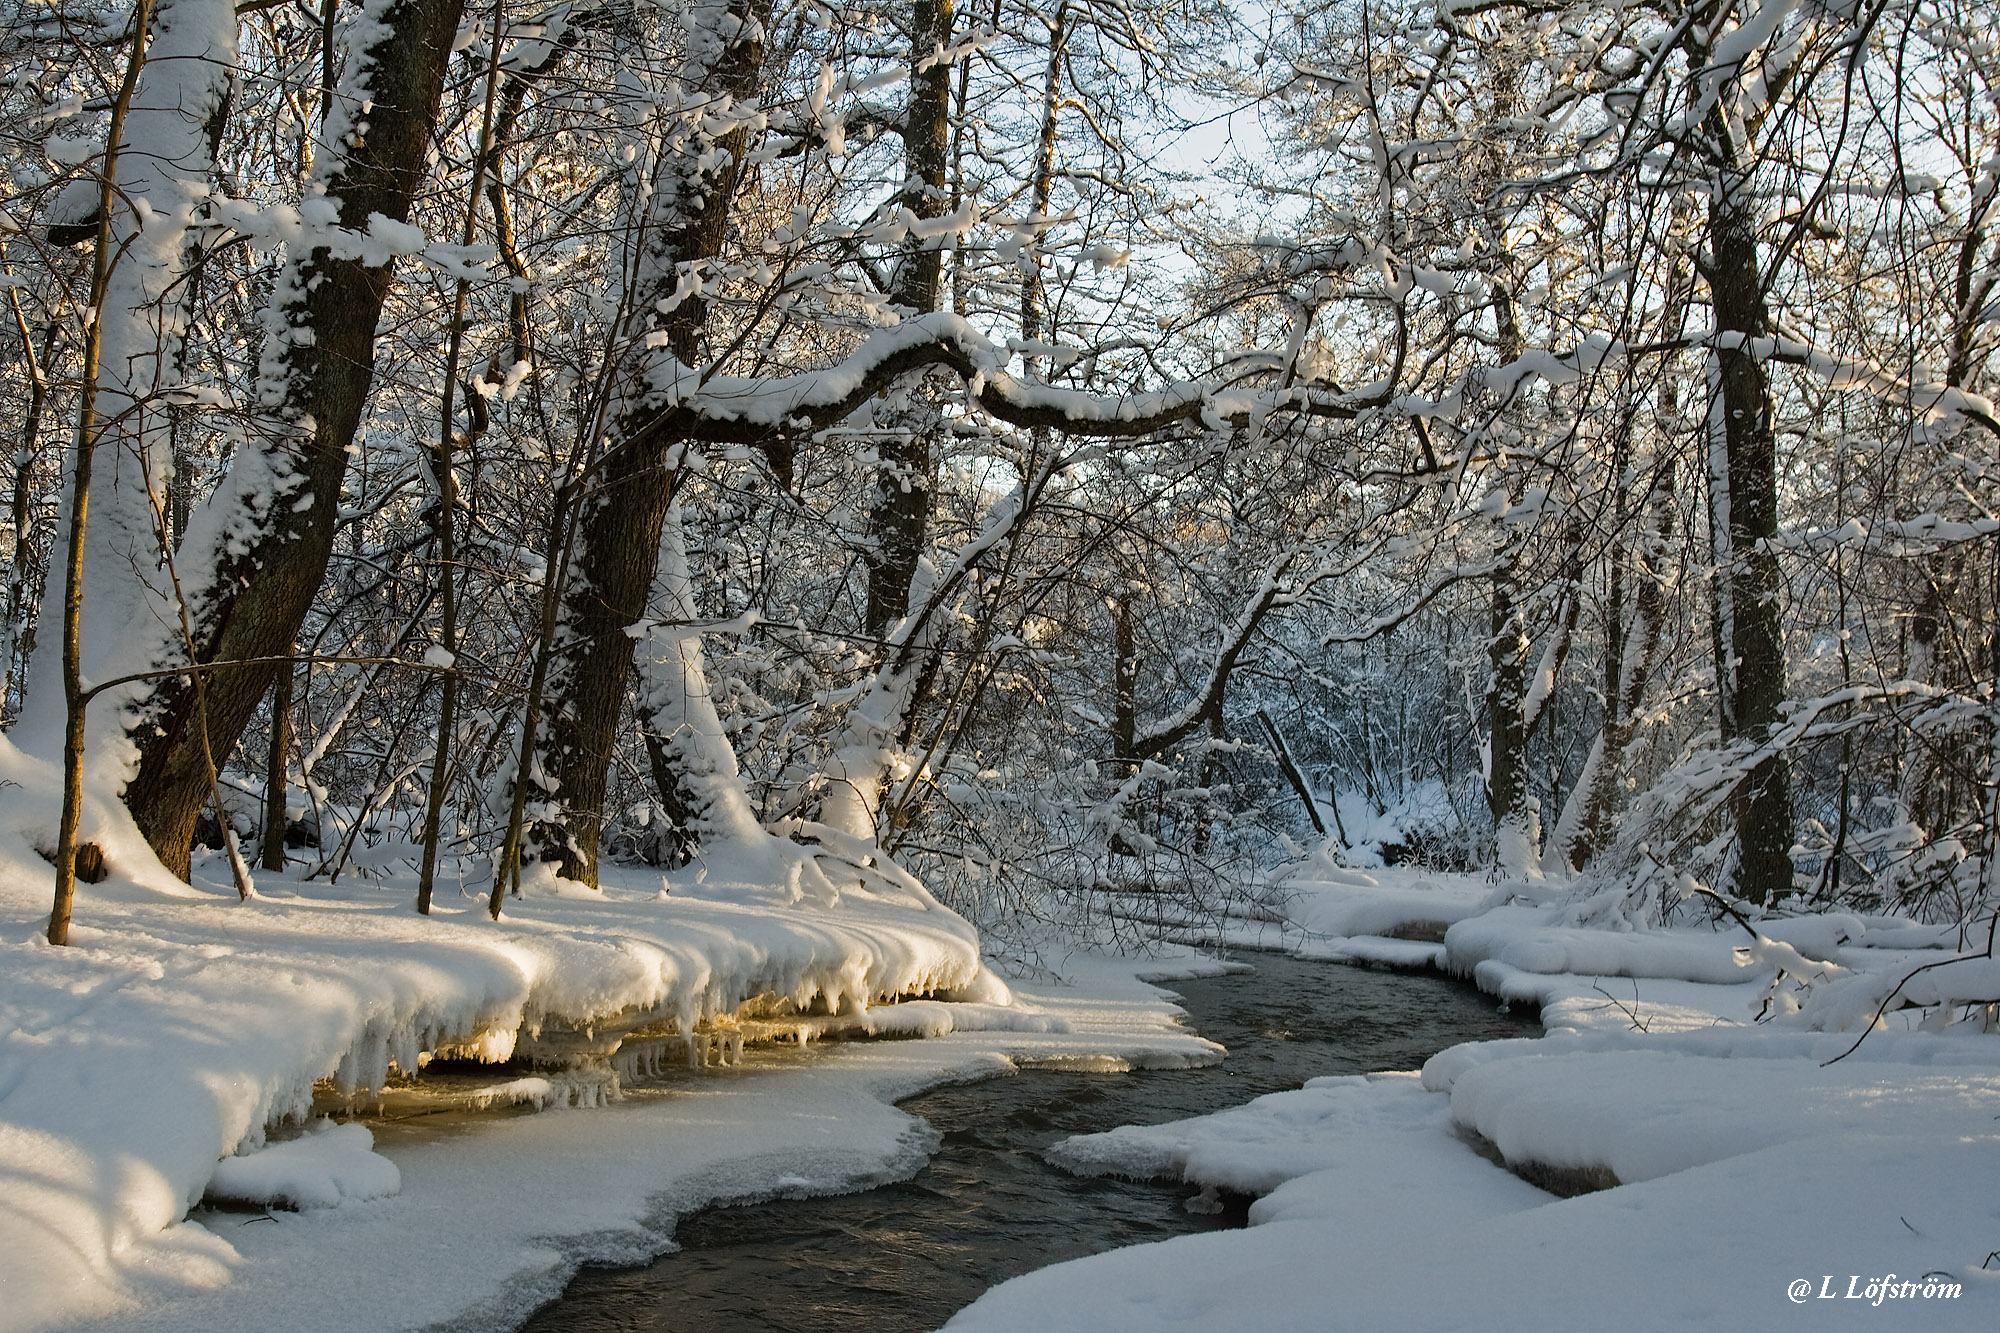 Landscapes-Winter wonderland